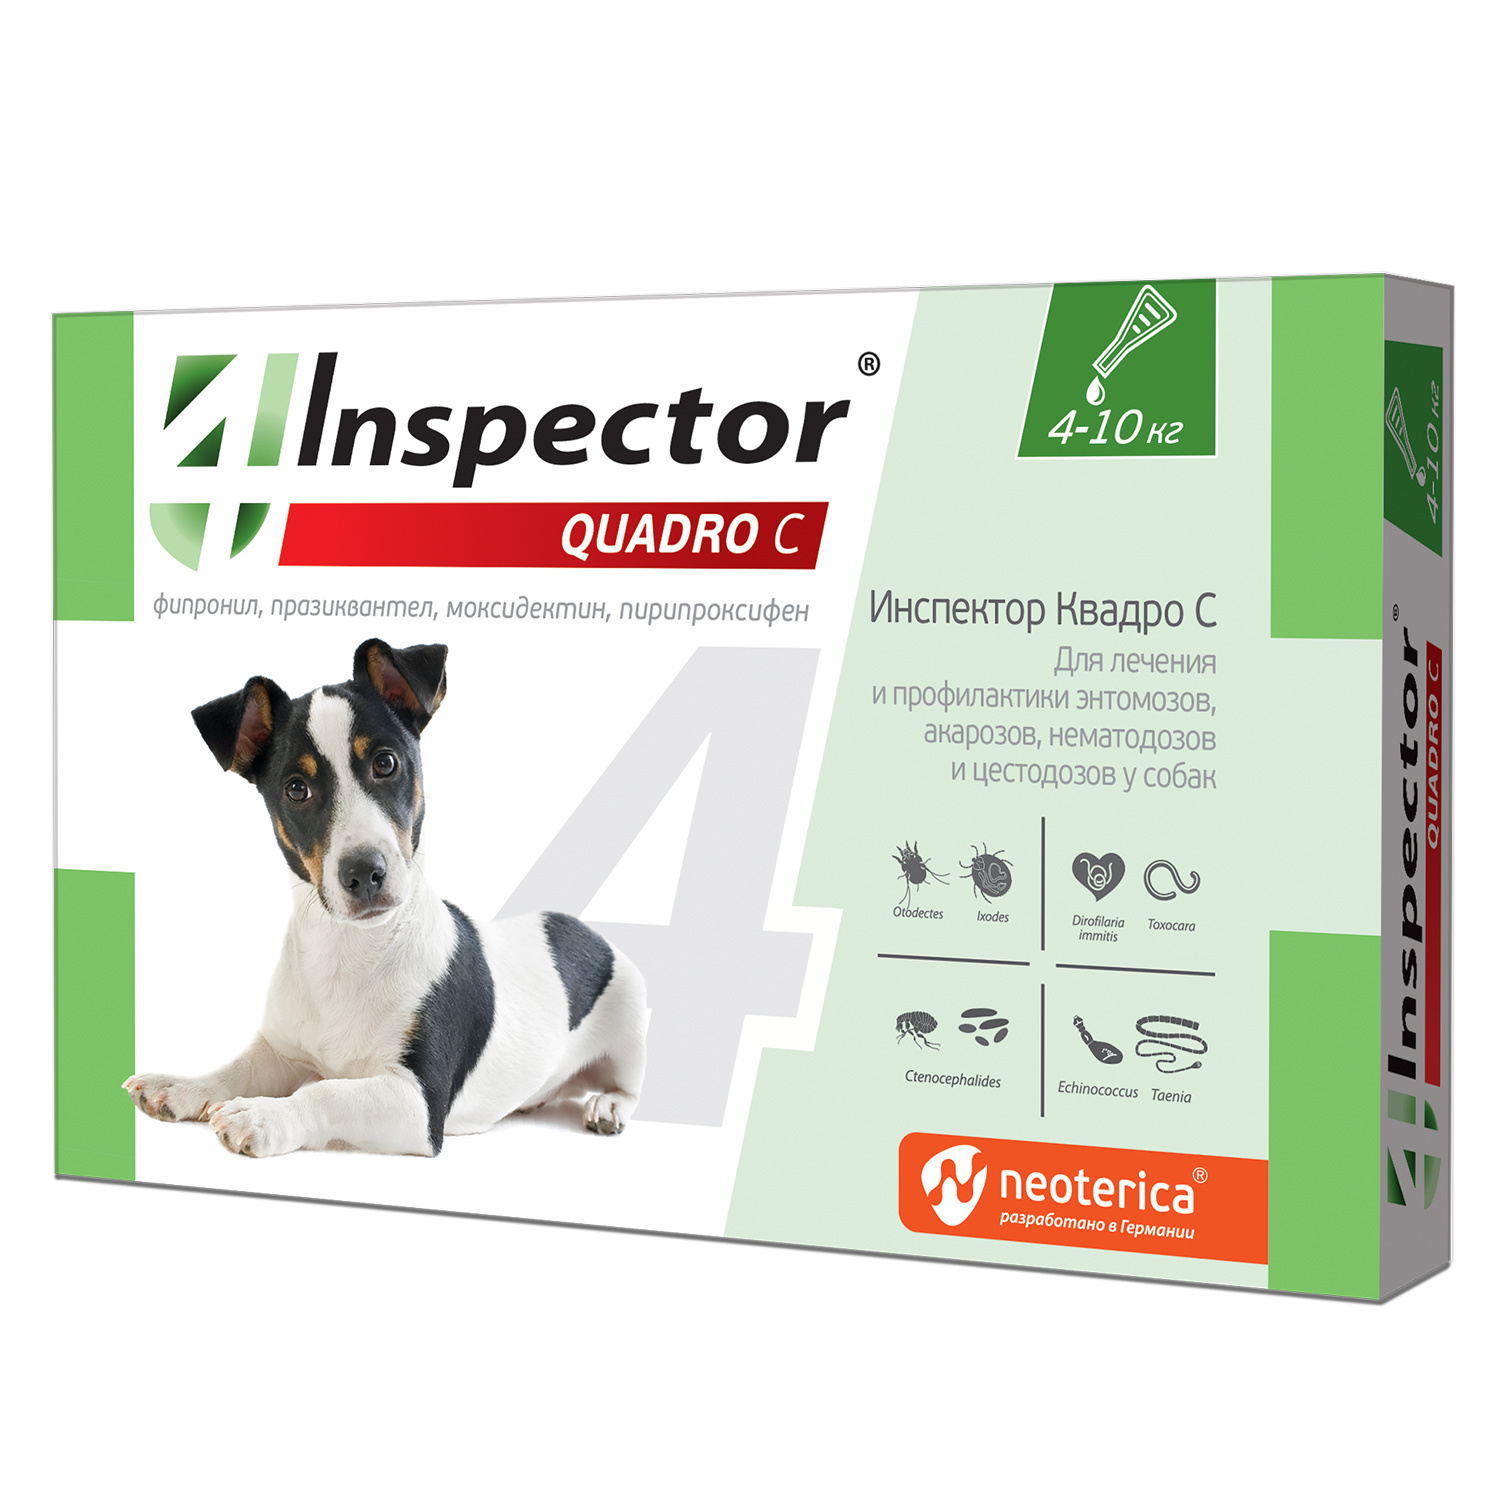 Inspector quadro капли на холку для собак весом 4-10 кг от клещей, насекомых, глистов (20 г)